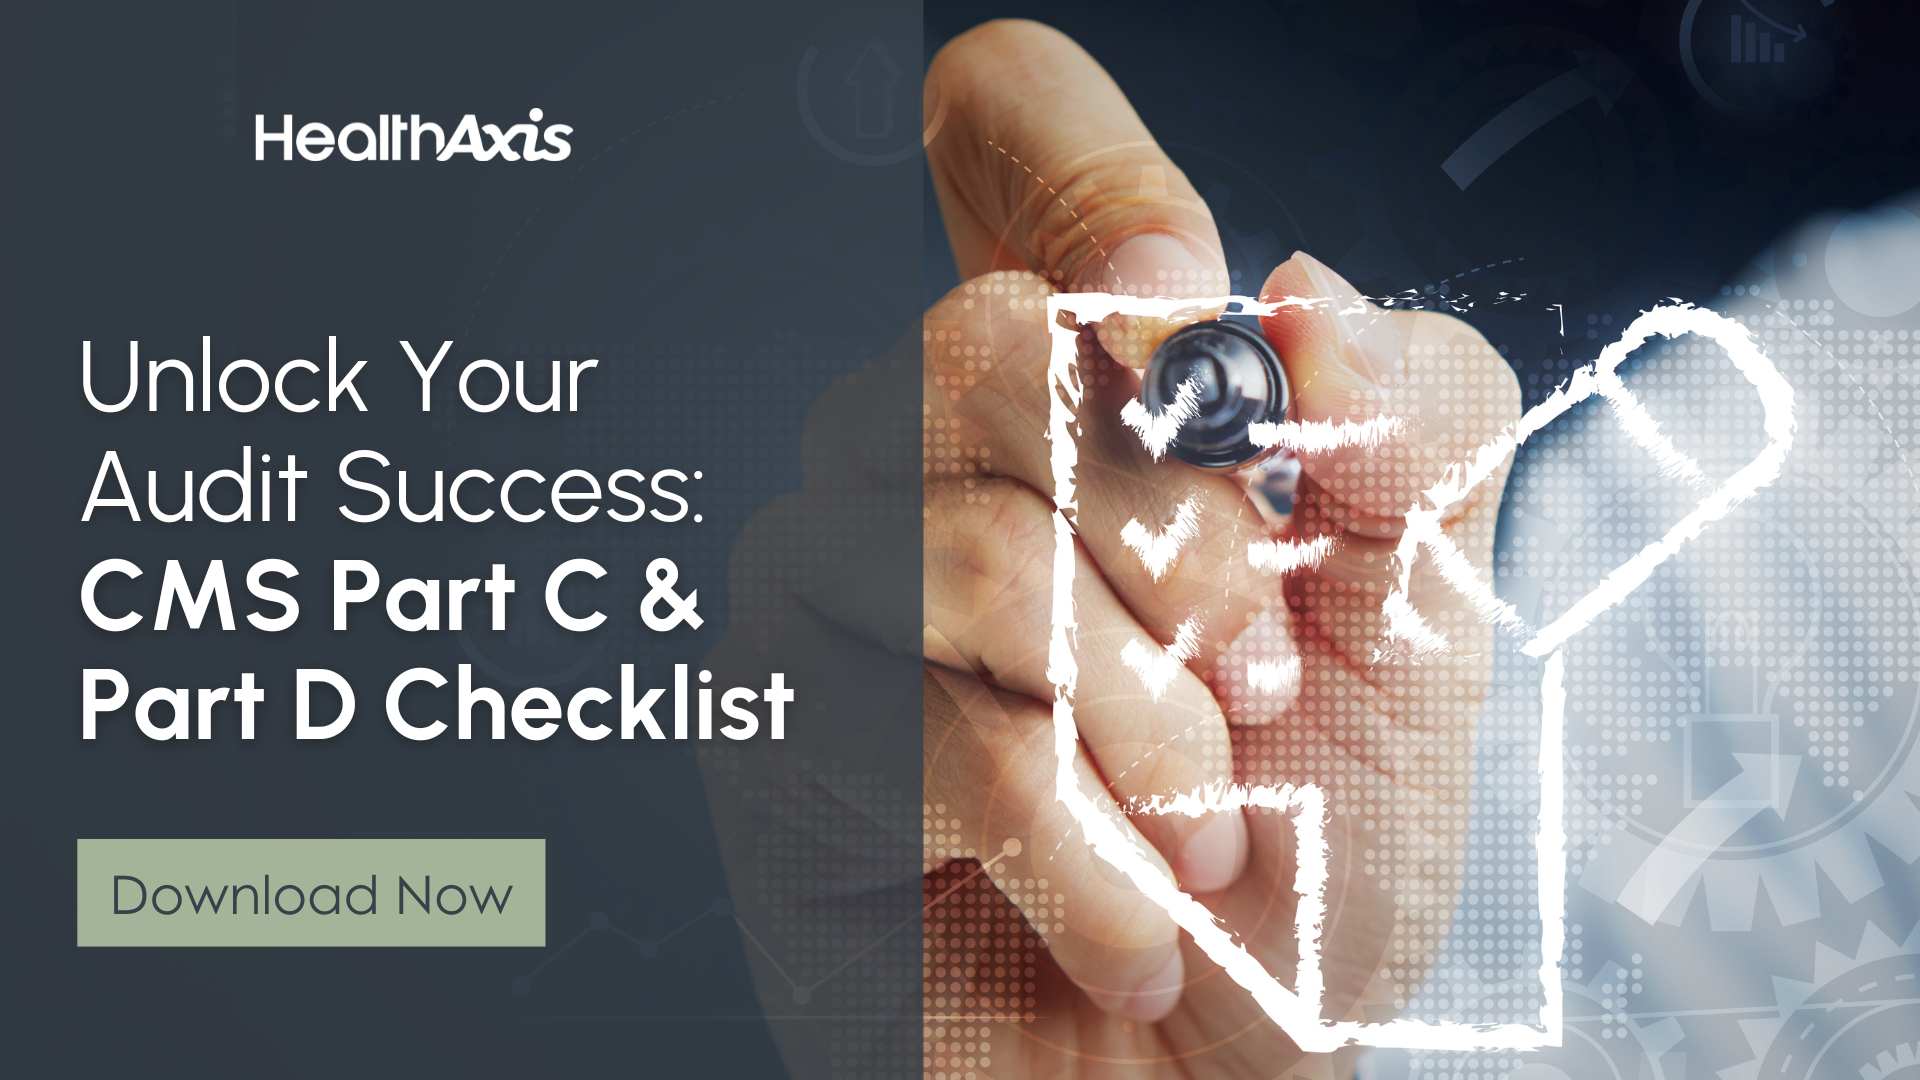 Unlock Your Audit Success with Our CMS Part C & Part D Checklist